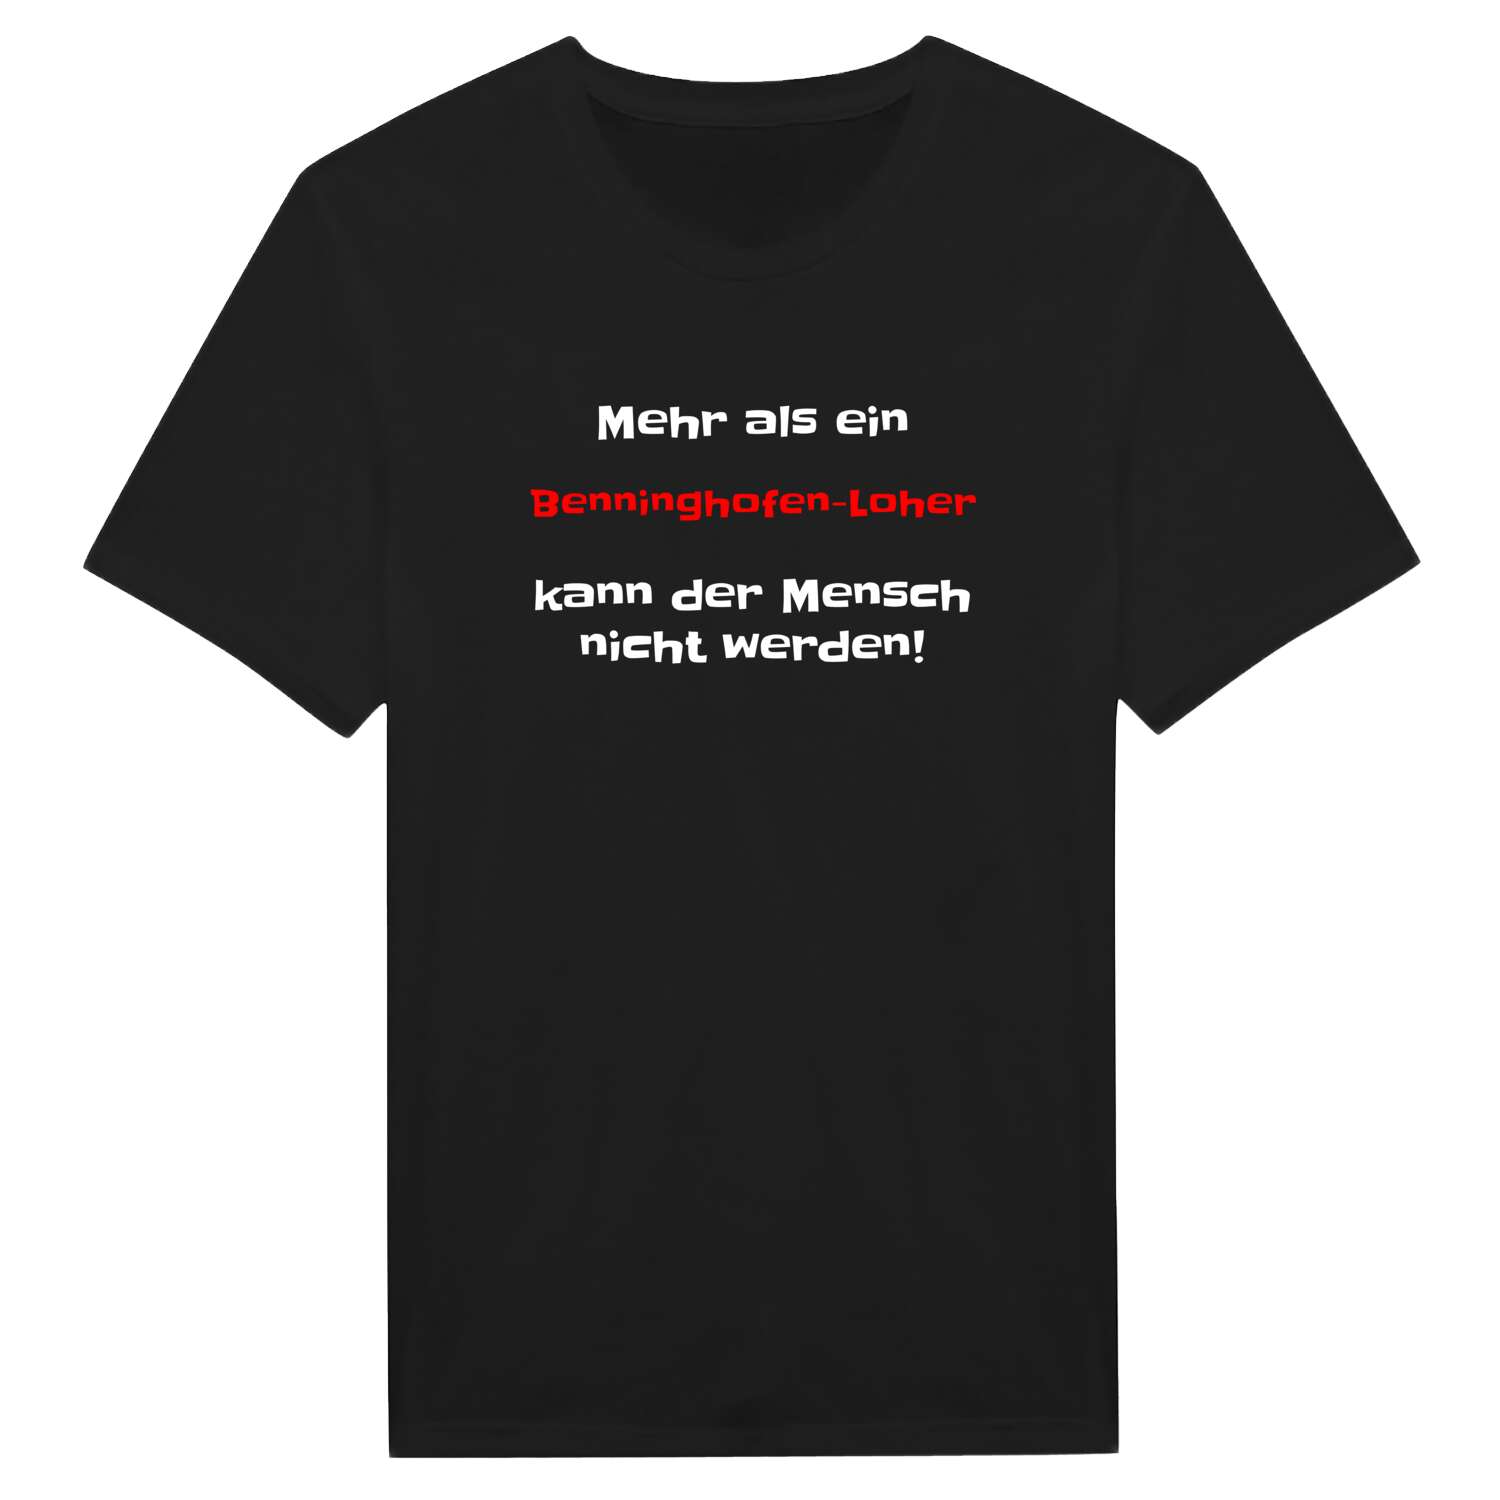 Benninghofen-Loh T-Shirt »Mehr als ein«